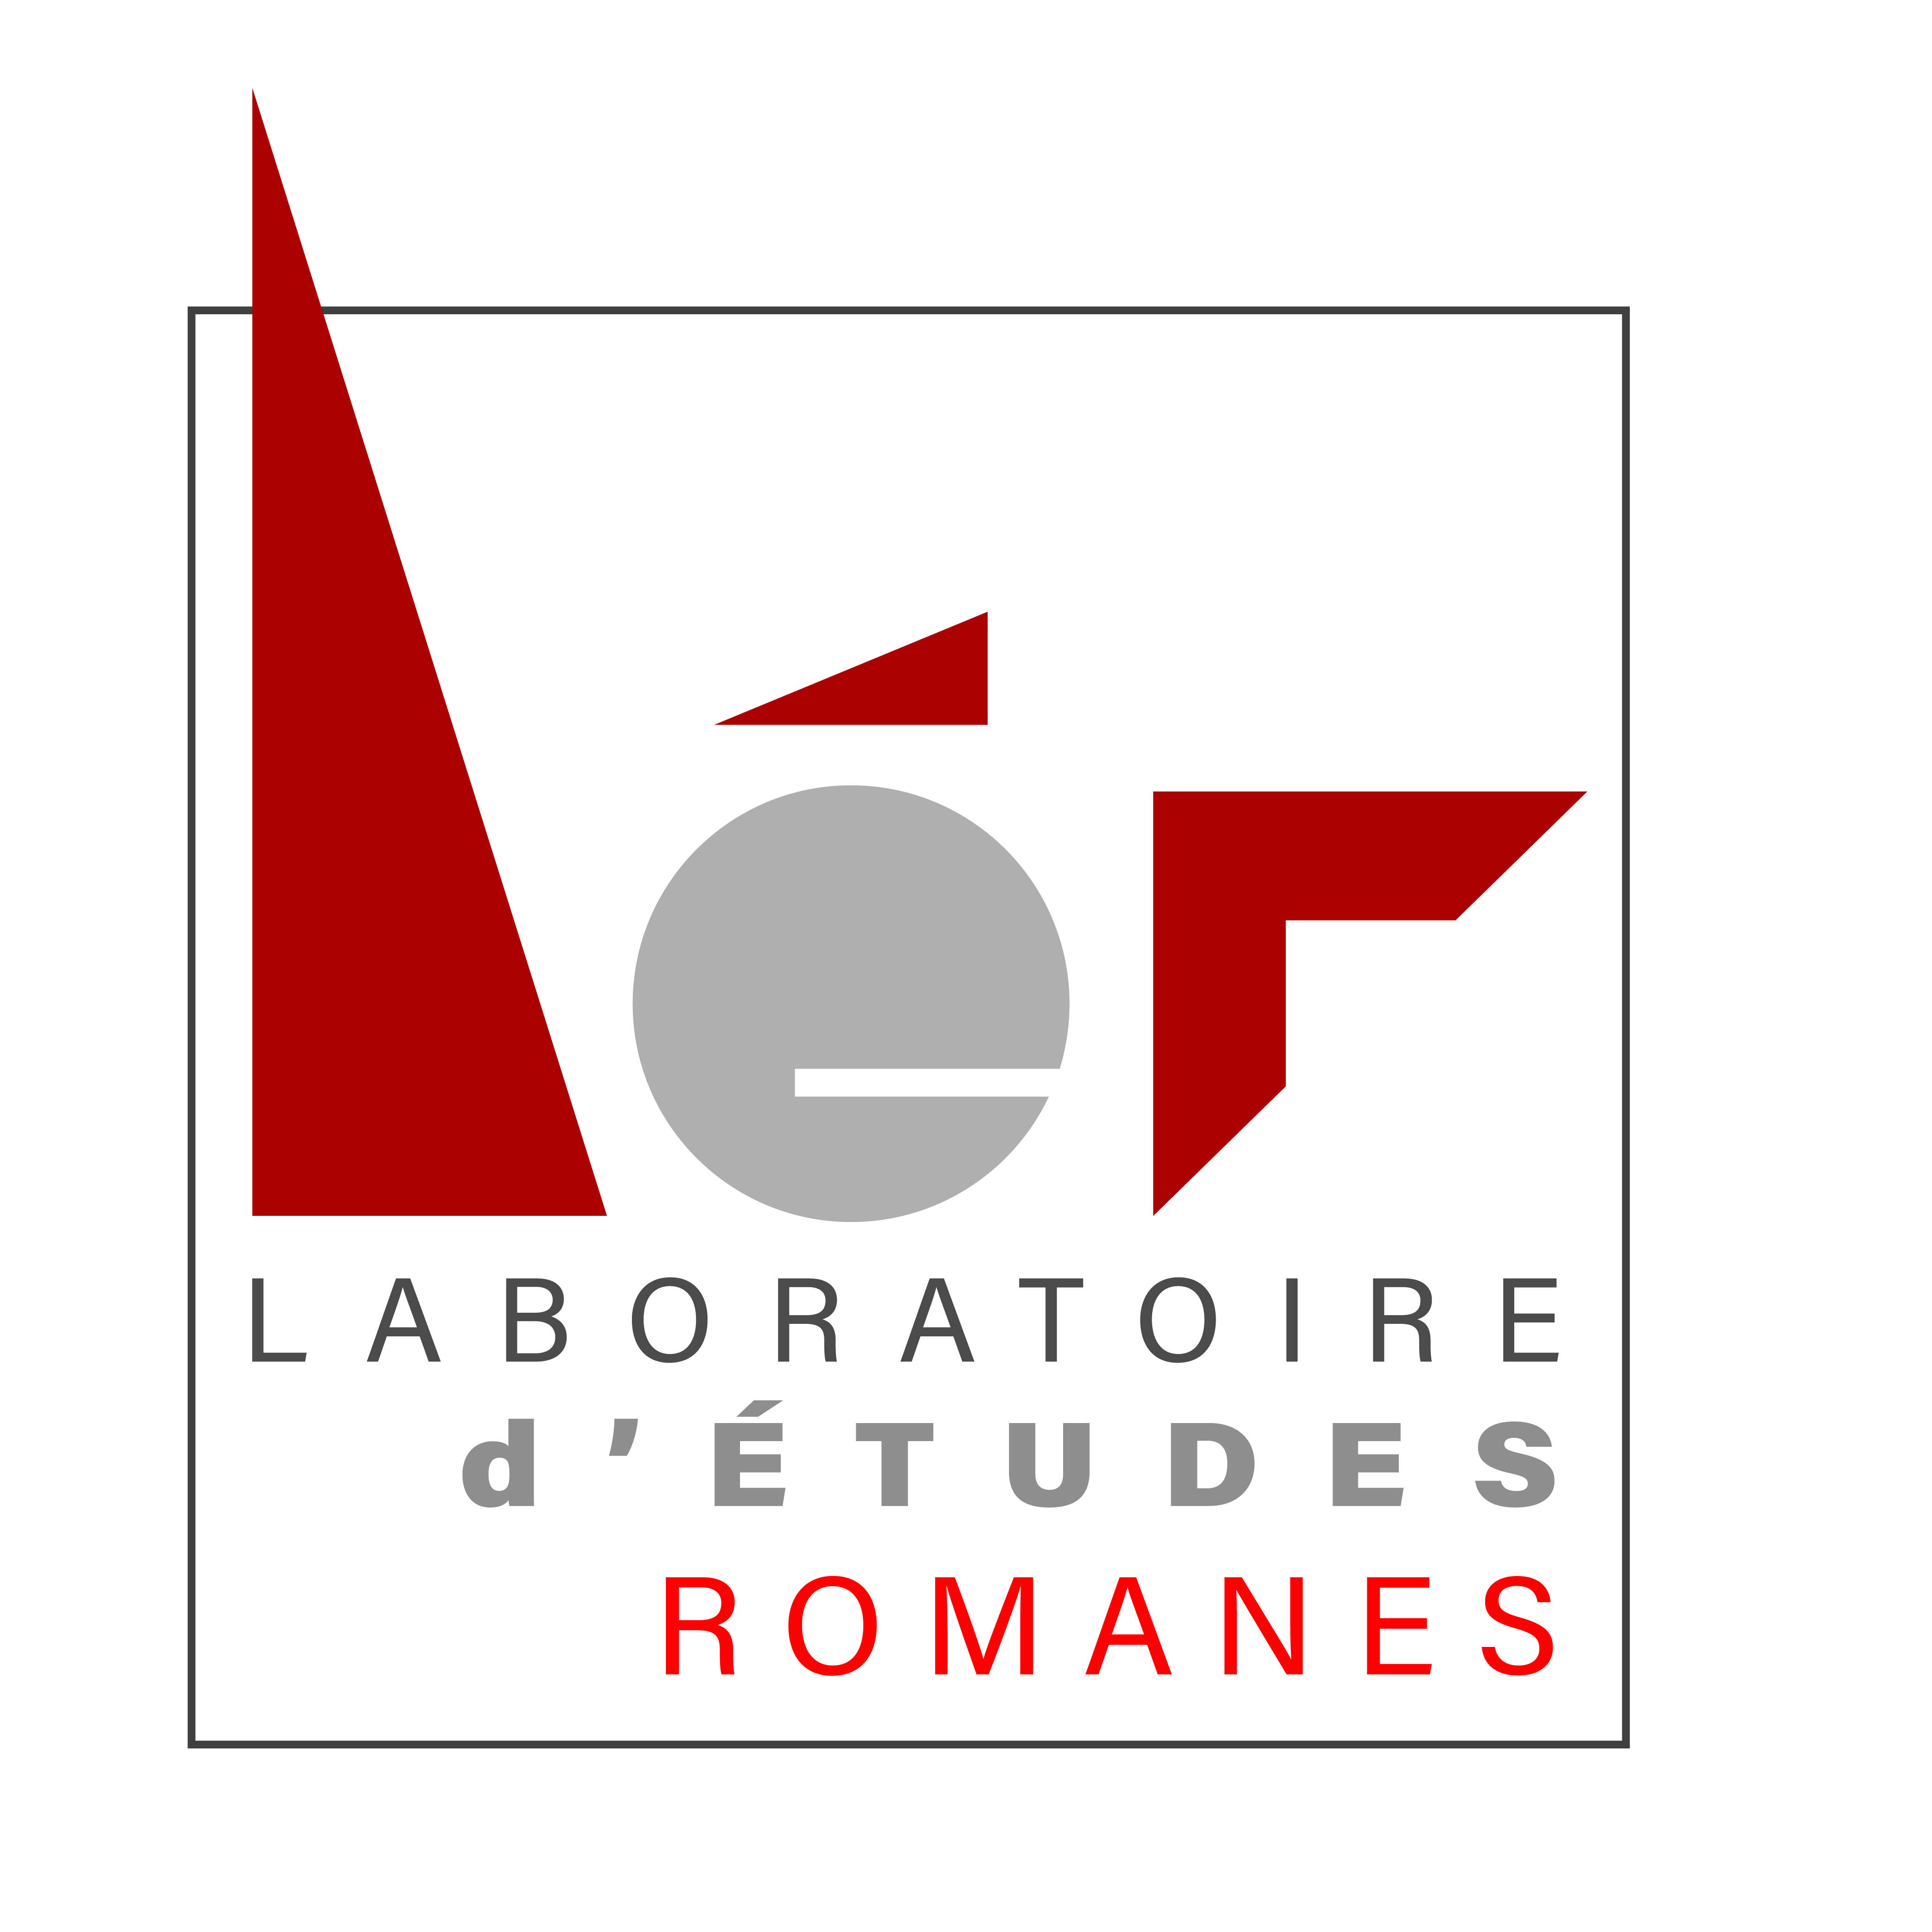 Laboratoire d'études romanes/Université Paris 8 